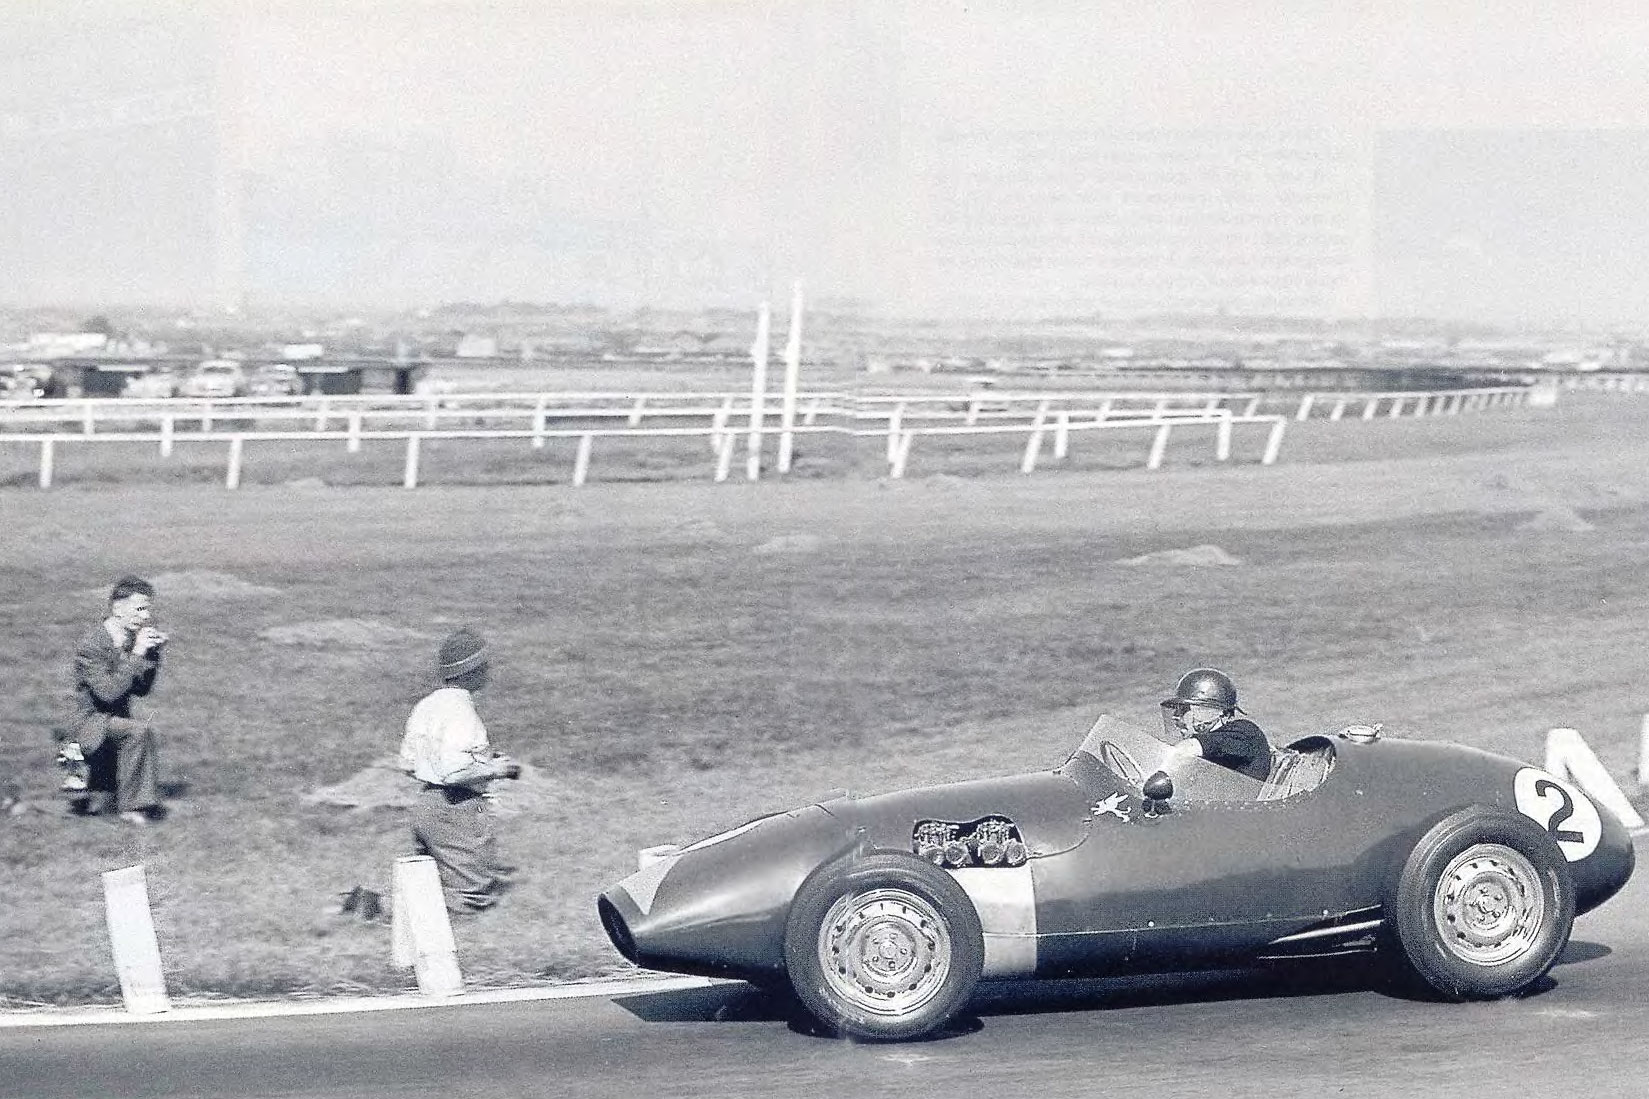 Connaught. Сегодня это имя известно лишь историкам автоспорта: небольшая и не слишком успешная команда, строившая свои автомобили и выступавшая в чемпионате мира с 1952 по 1957 год. Однако в том, что Великобритания ныне является мировым лидером автоспортивной индустрии, заслуга не только таких «столпов» прошлого как Cooper и Vanwall, Lotus и Brabham, но и - в не меньшей степени - Connaught.